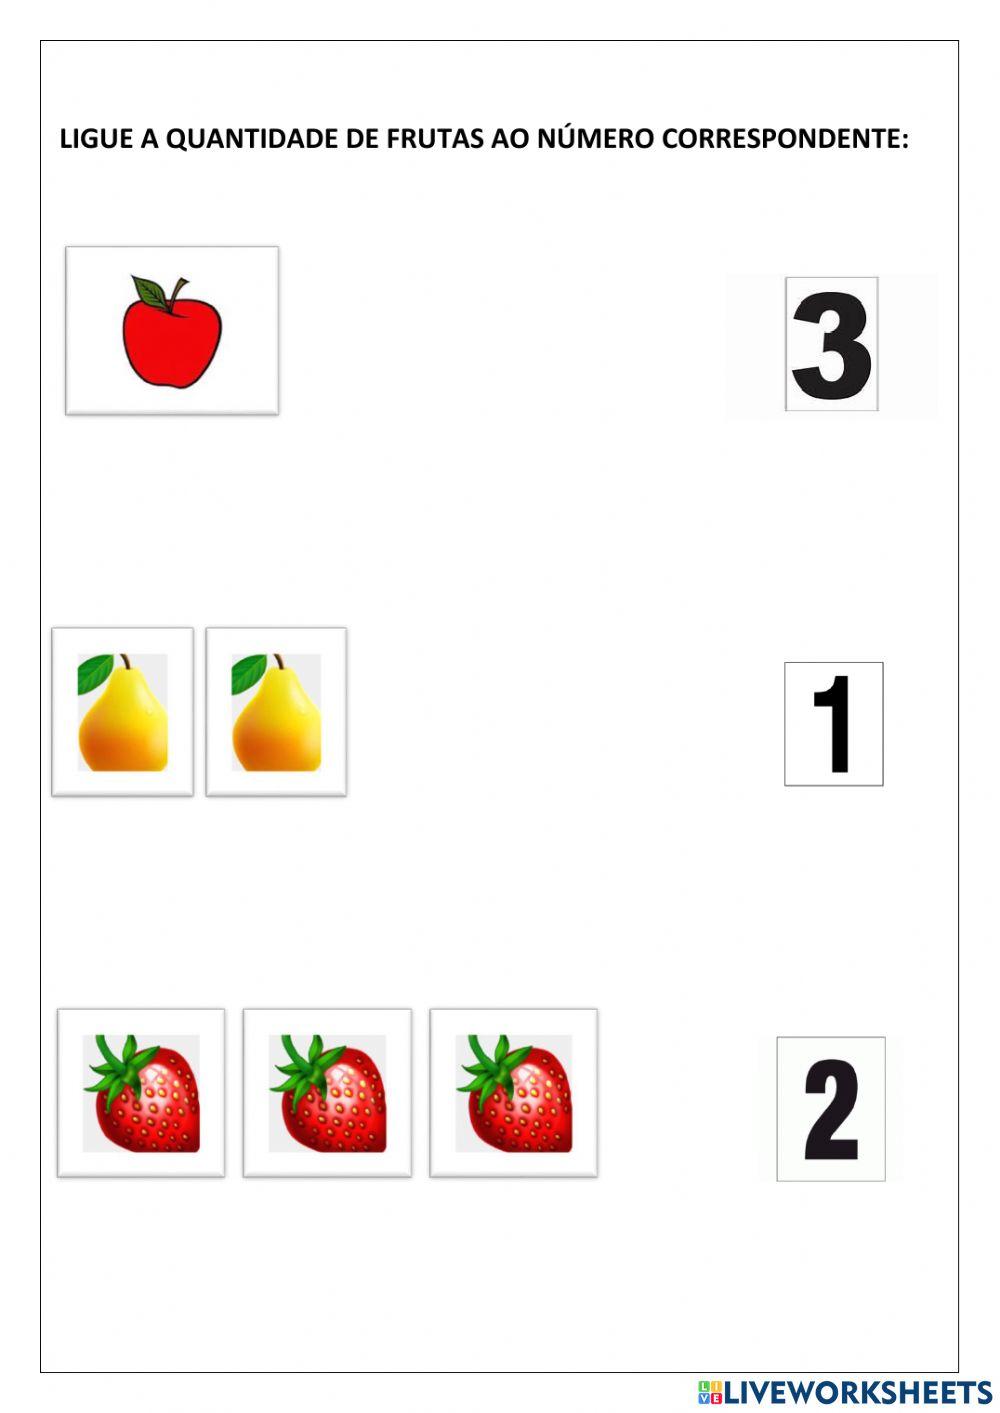 Ligue a quantidade de frutas ao número correspondente